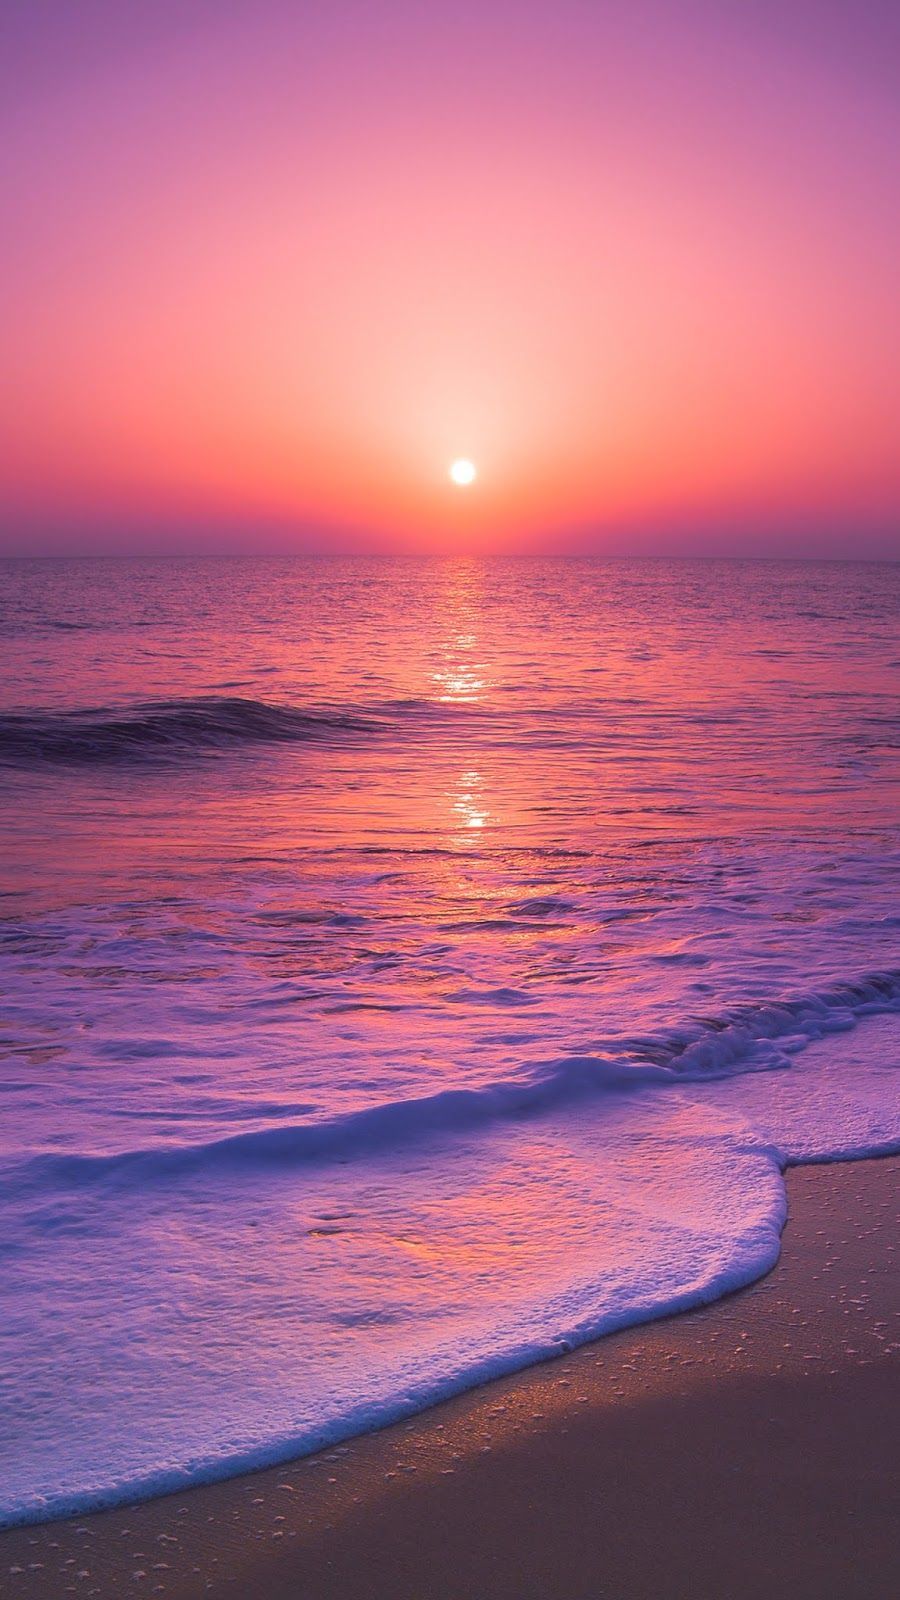  Sonne Strand Meer Hintergrundbild 900x1600. Sunset beach wallpaper #wallpaper #iphone #android #background #followme. Sunset wallpaper, Beach sunset wallpaper, Beautiful wallpaper